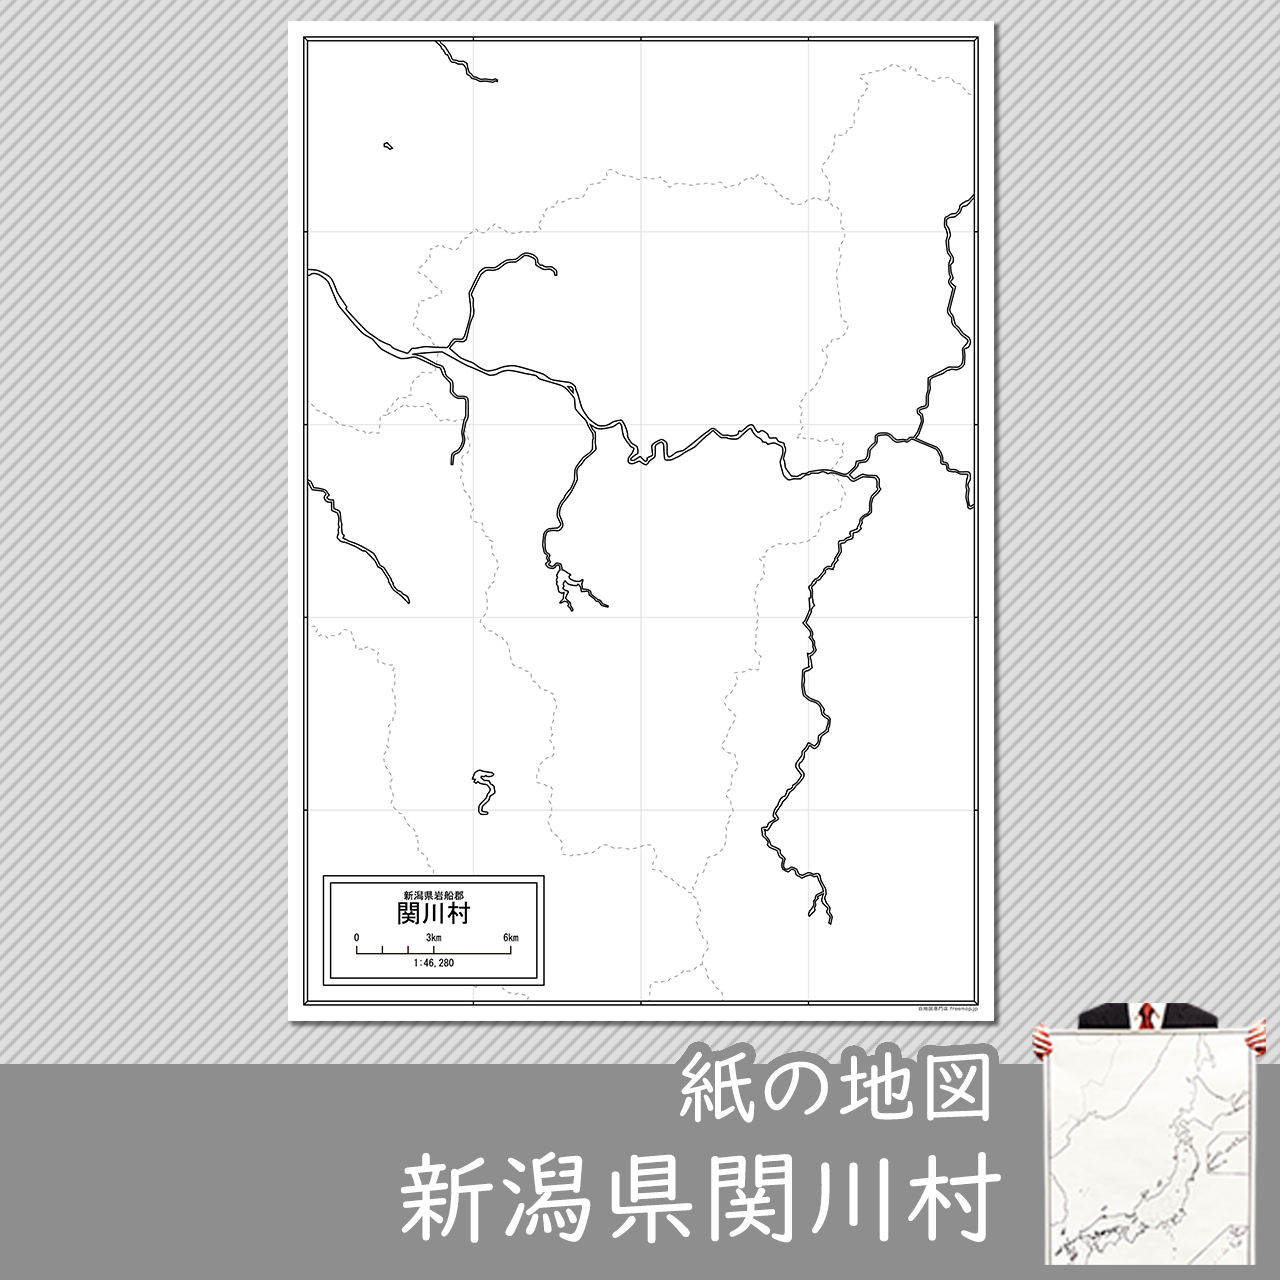 関川村の紙の白地図